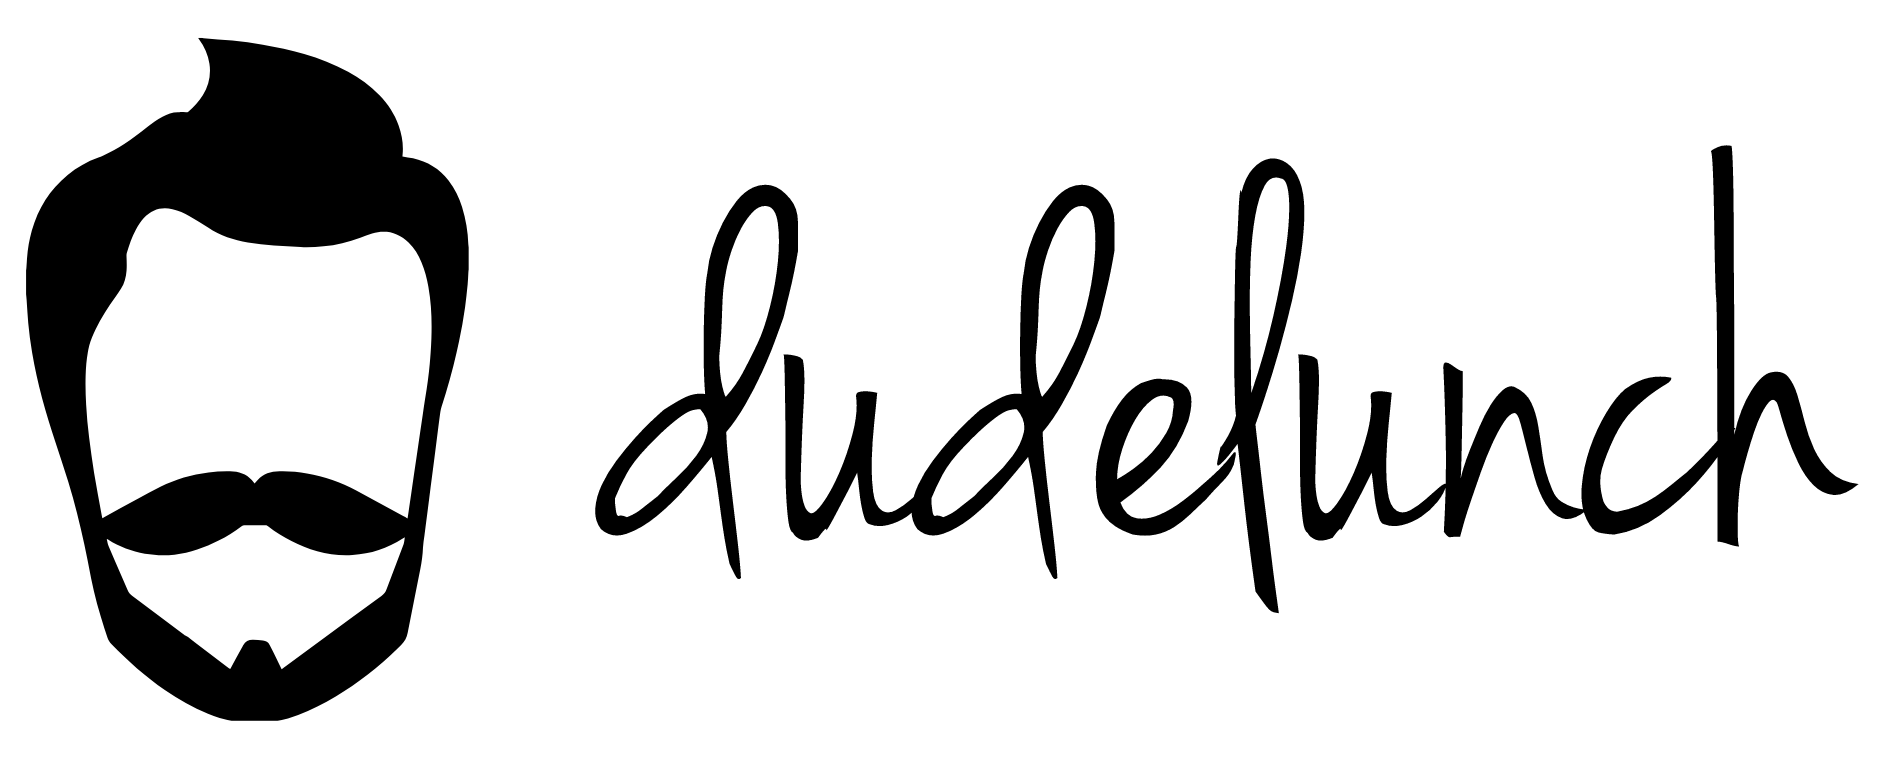 DudeLunch